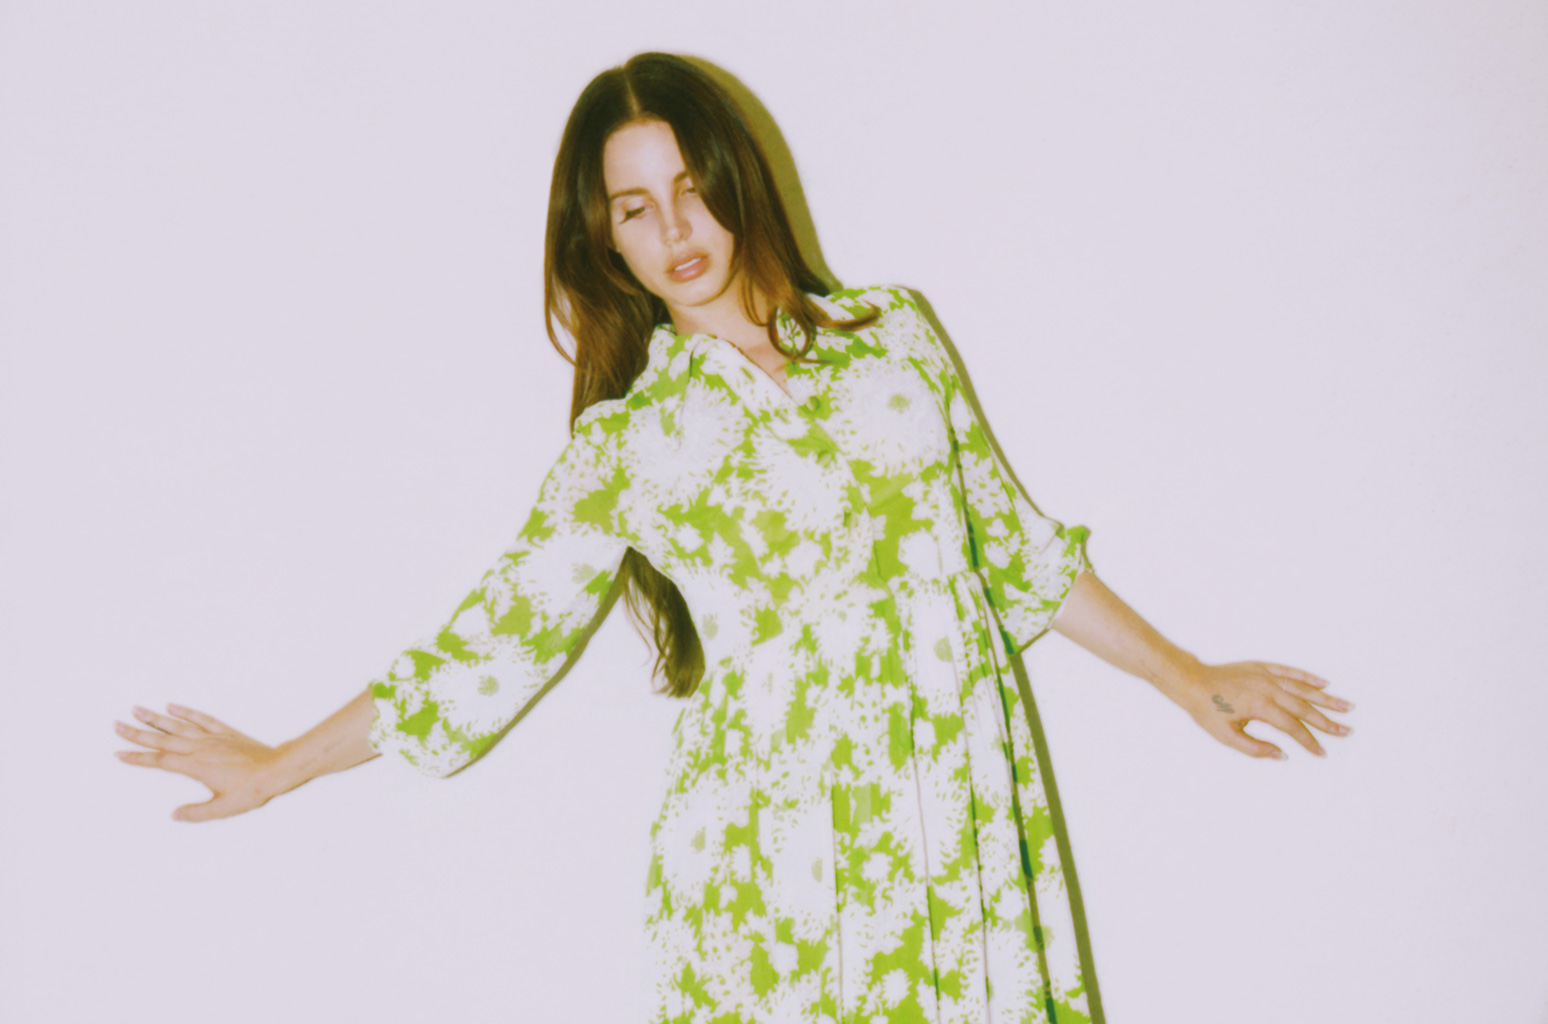 Lana del Rey comparte extracto de nueva canción que habla sobre la paz. Cusica plus